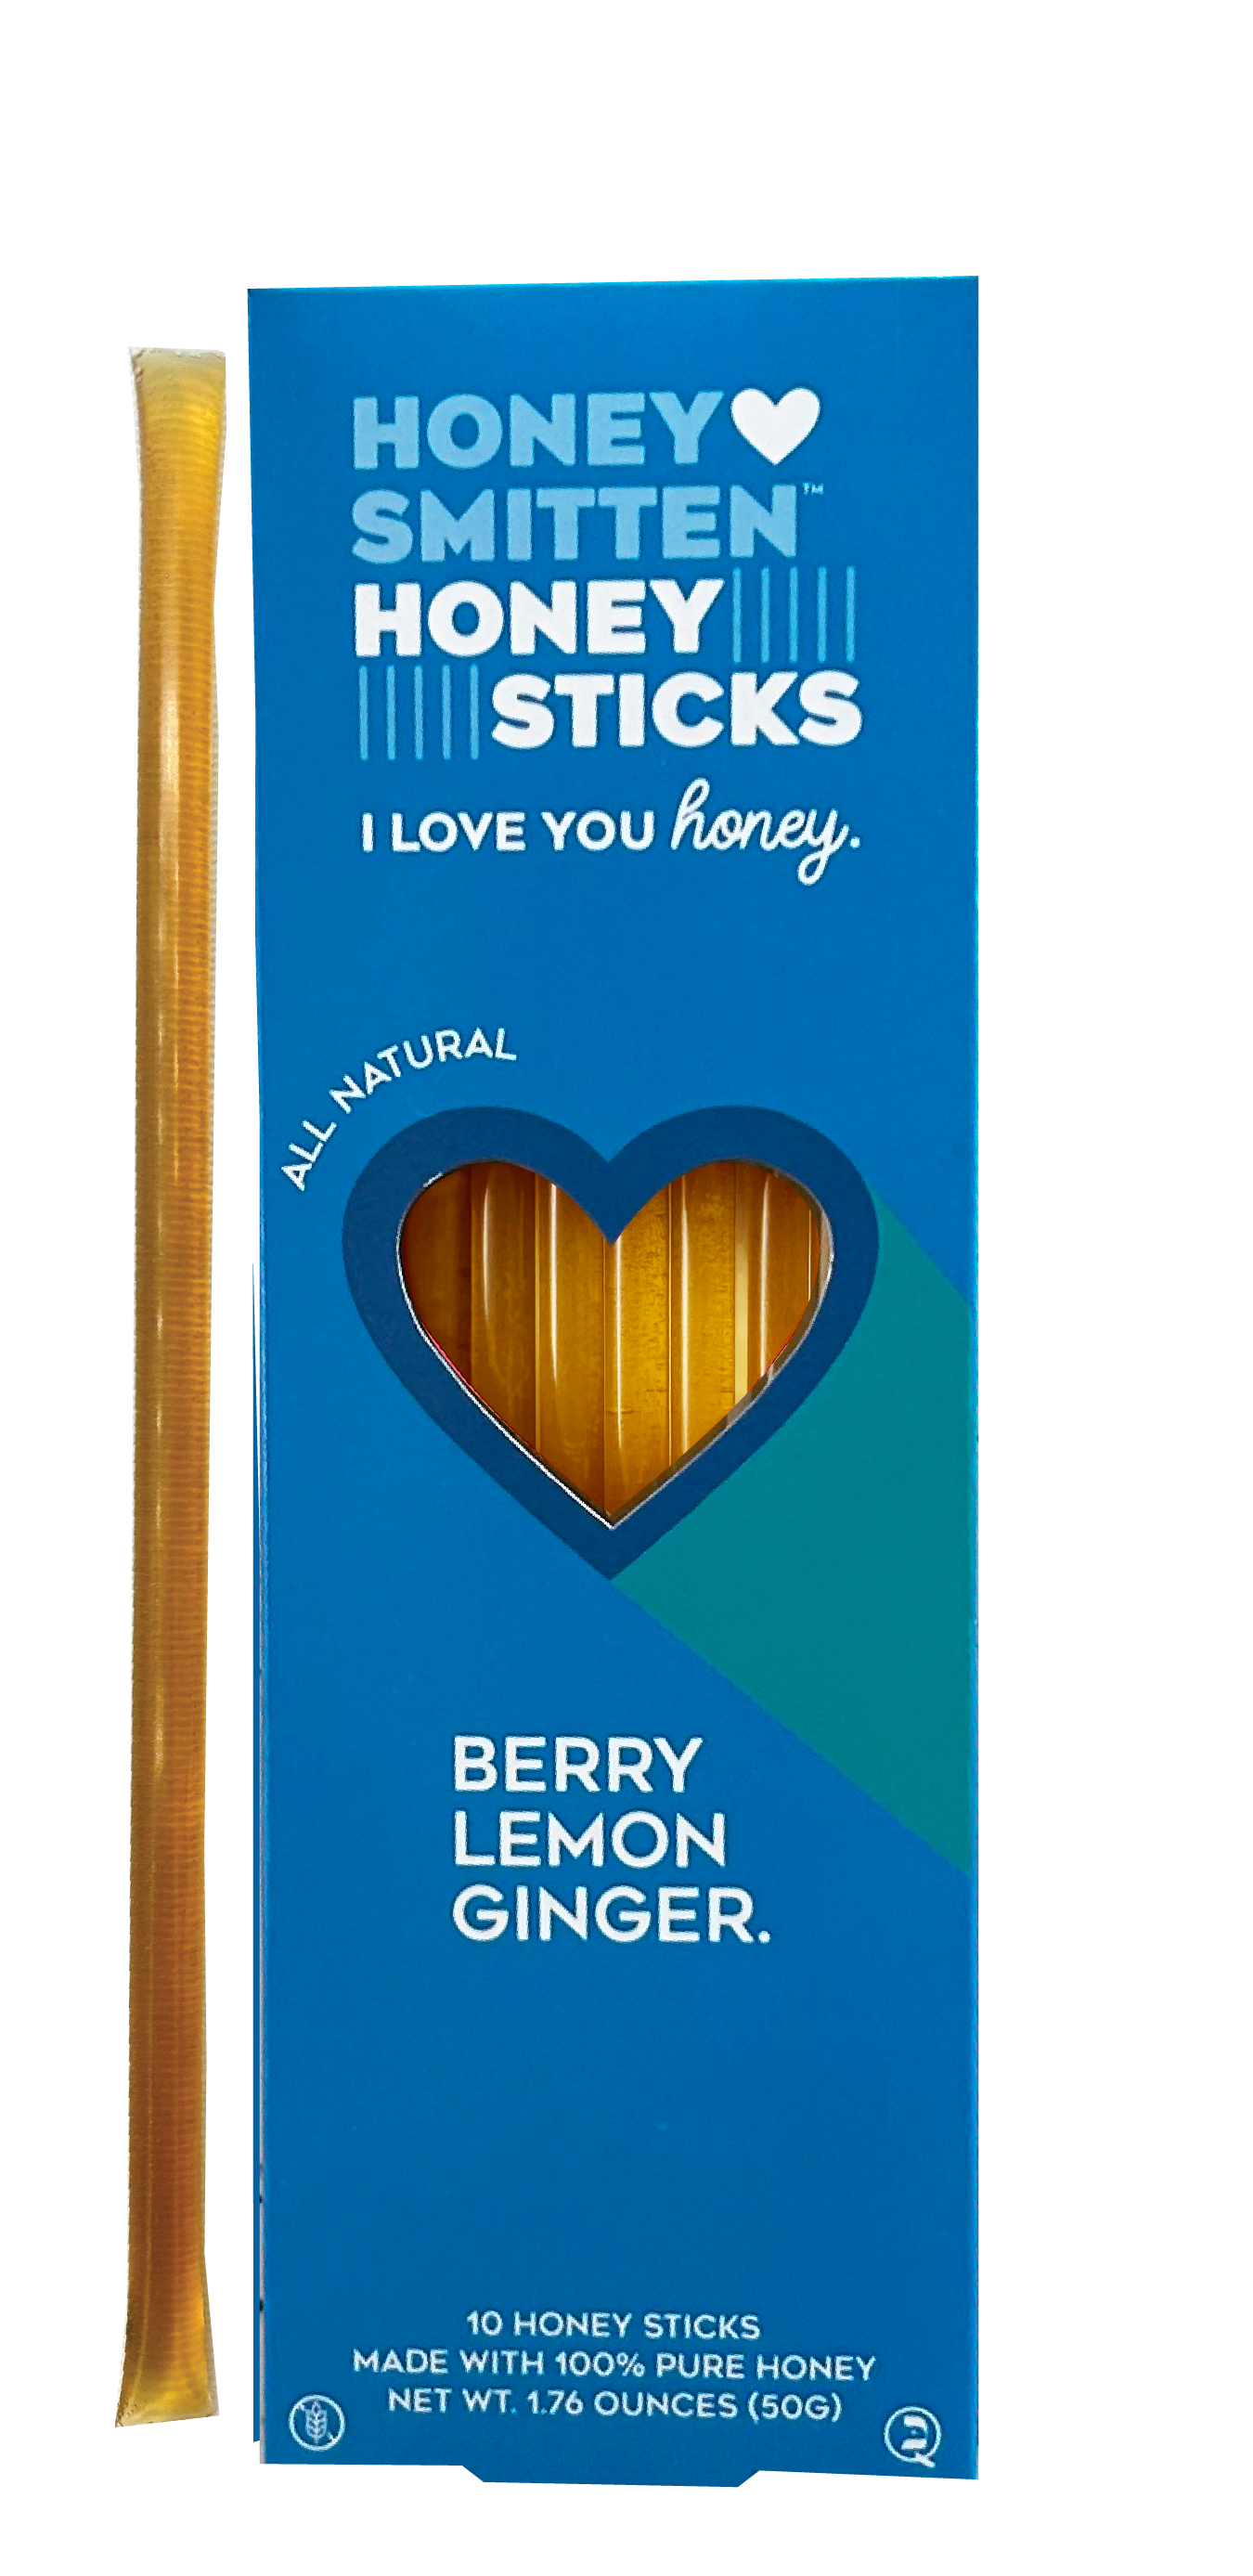 Berry Lemon Ginger Honey Sticks